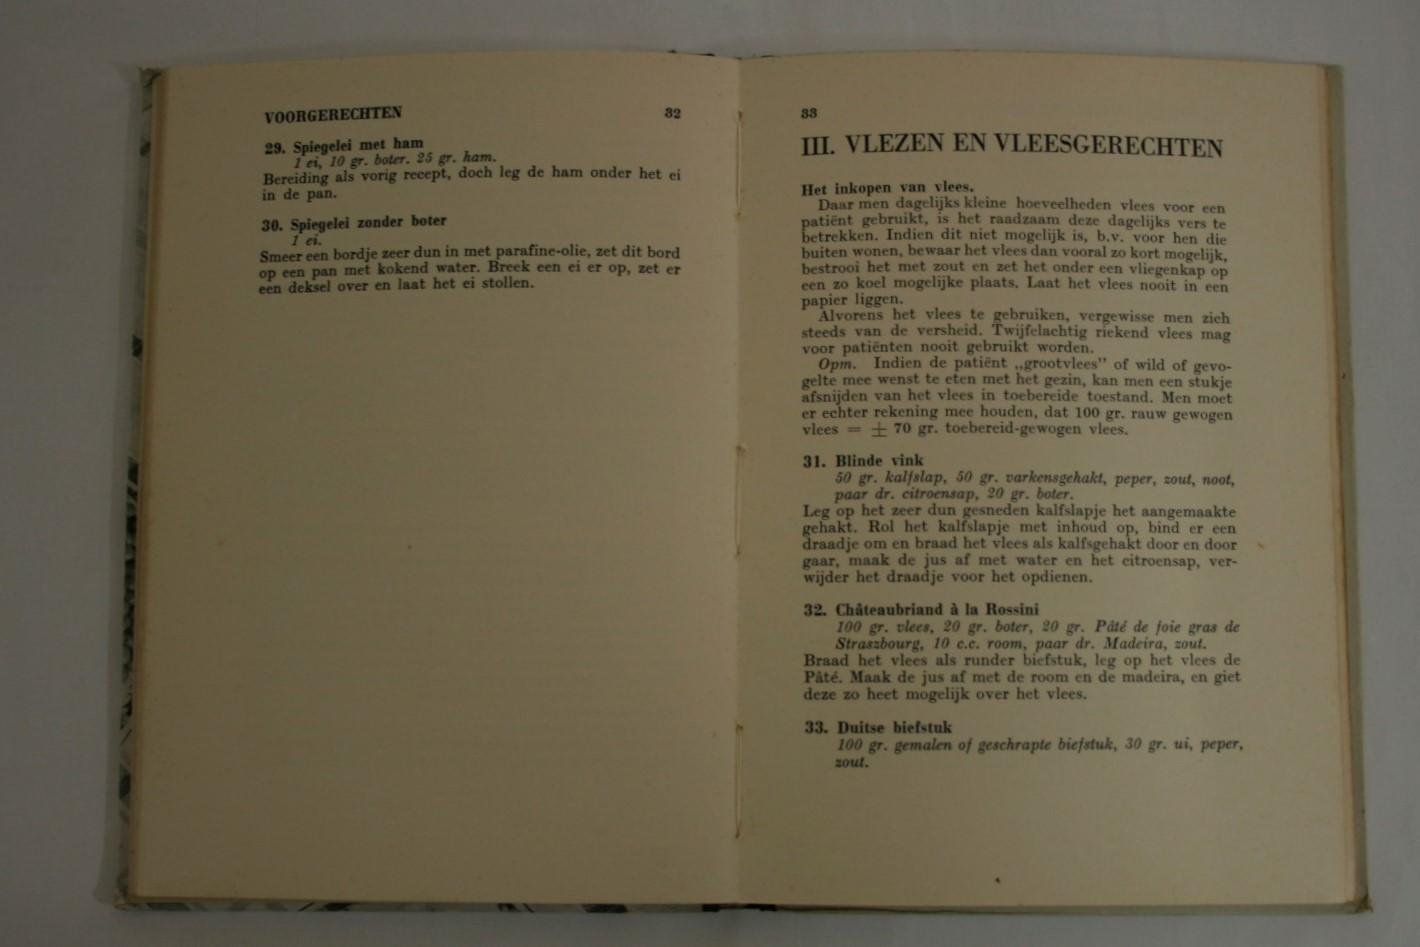 Polak Daniels, Cath - Dieet-Kookboek voor suikerzieken  1938